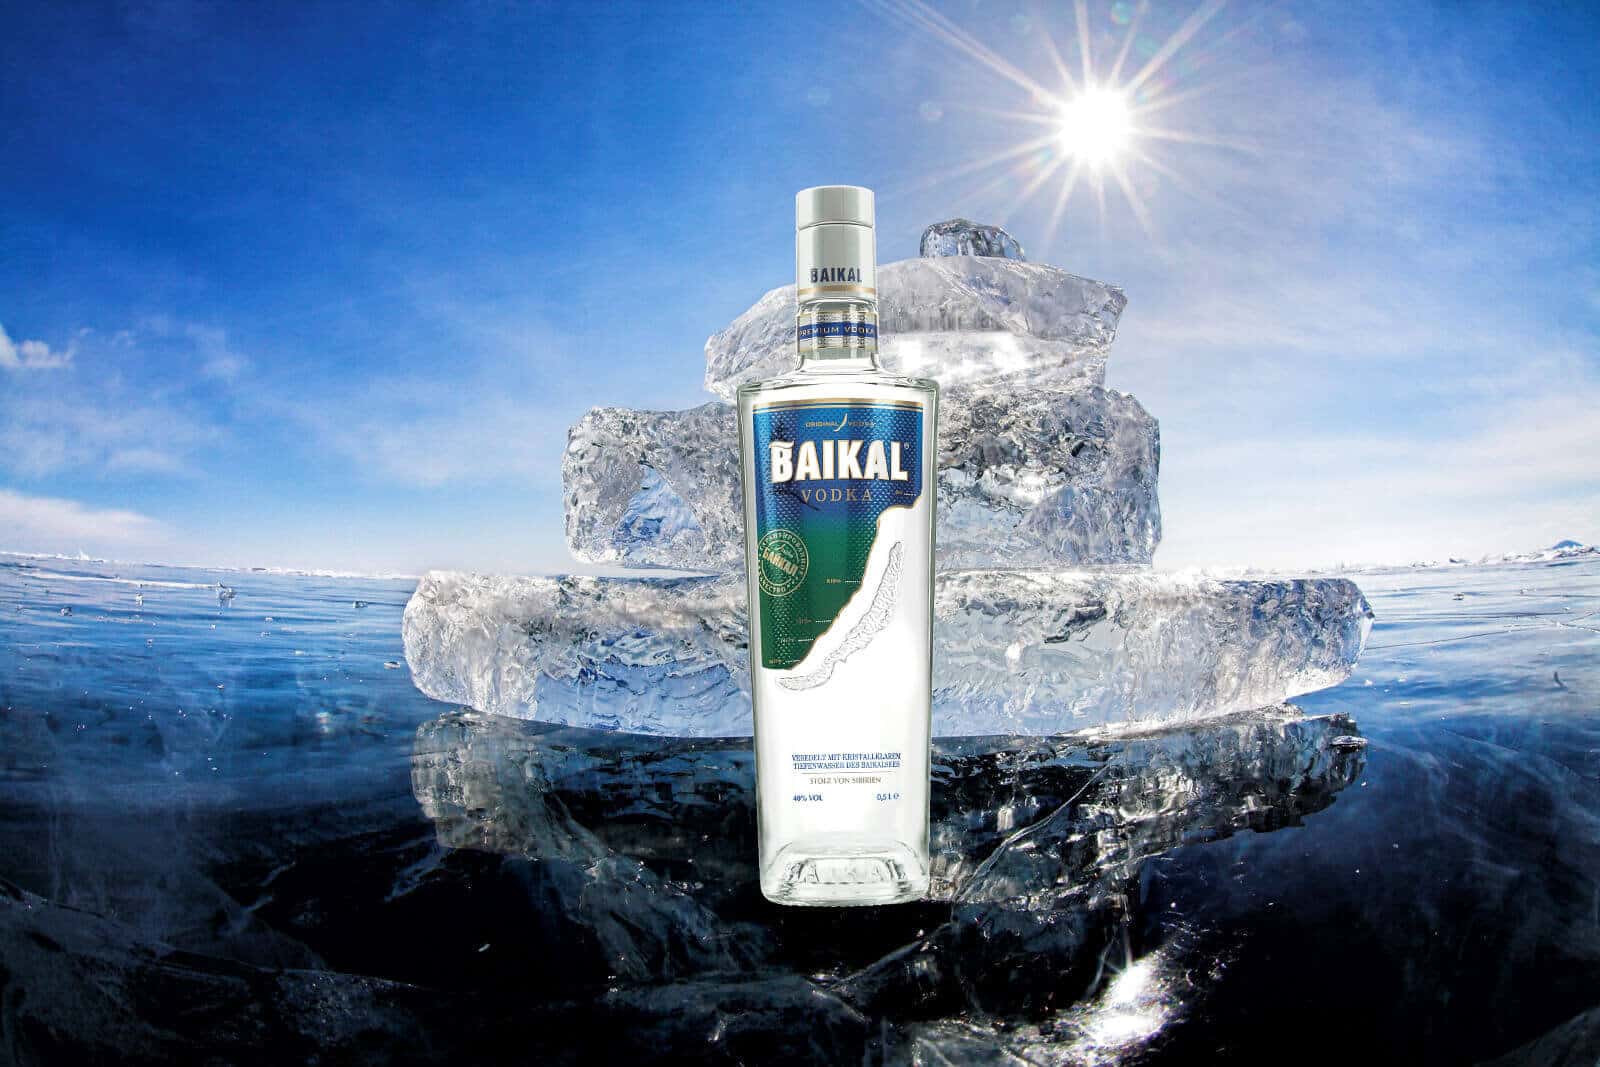 Baikal vodka